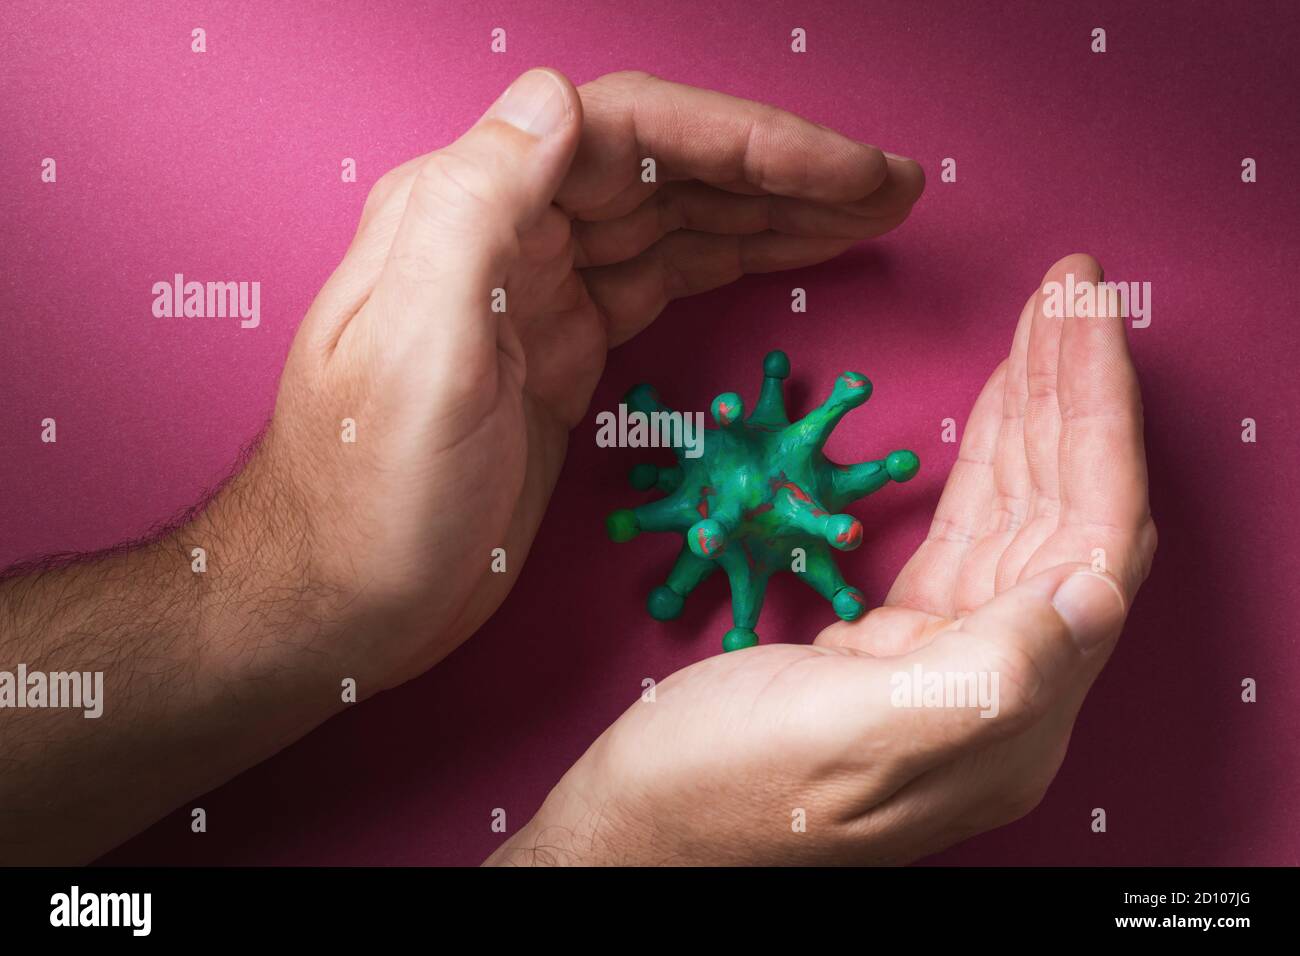 Les mains humaines et le coronavirus jouet. Concept sur le thème de la lutte artificielle contre le virus Banque D'Images